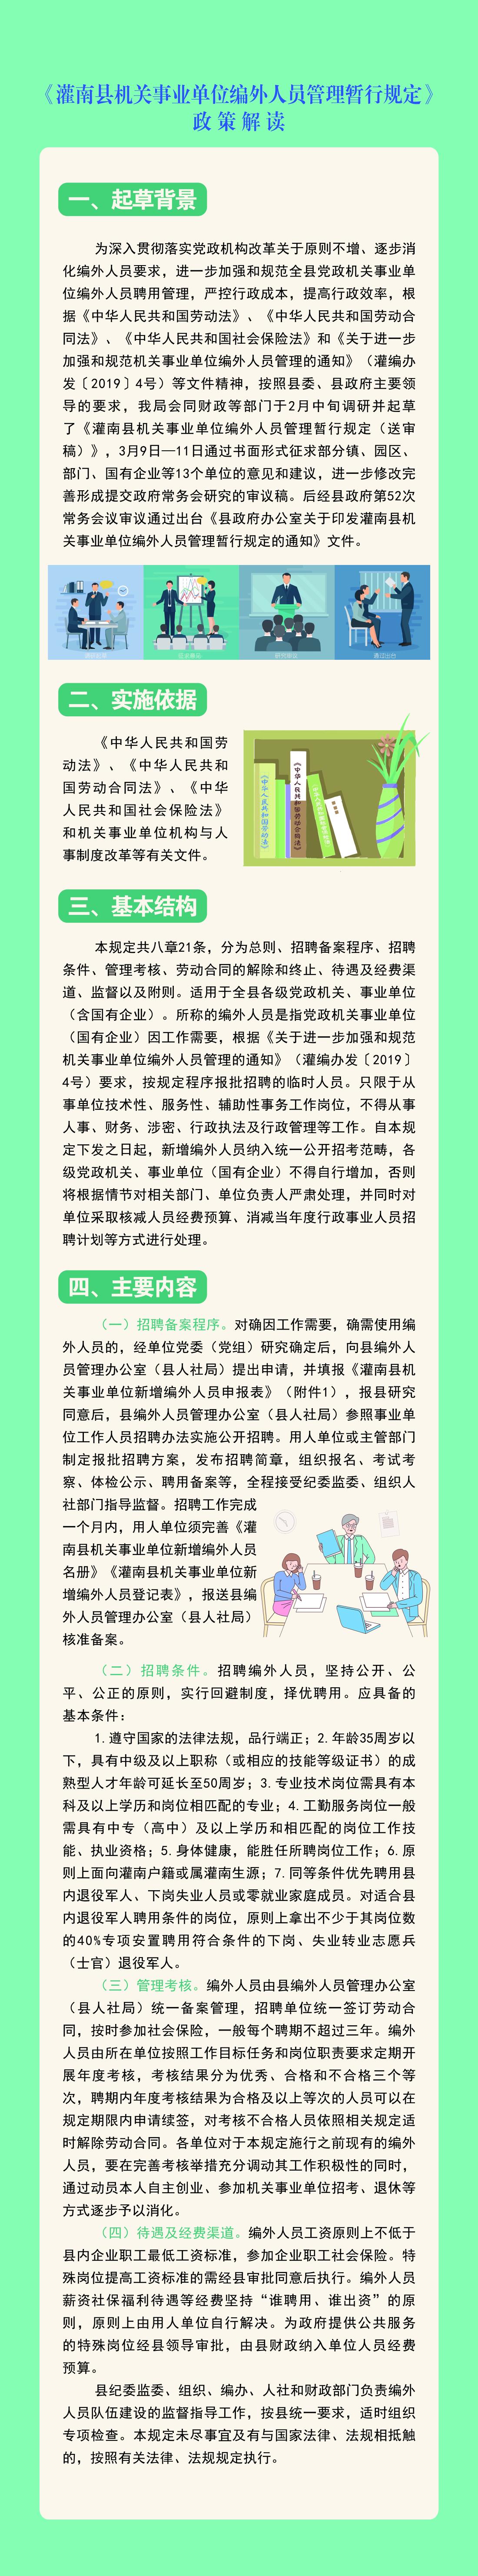 《灌南县机关事业单位编外人员管理暂行规定》政策解读.jpg